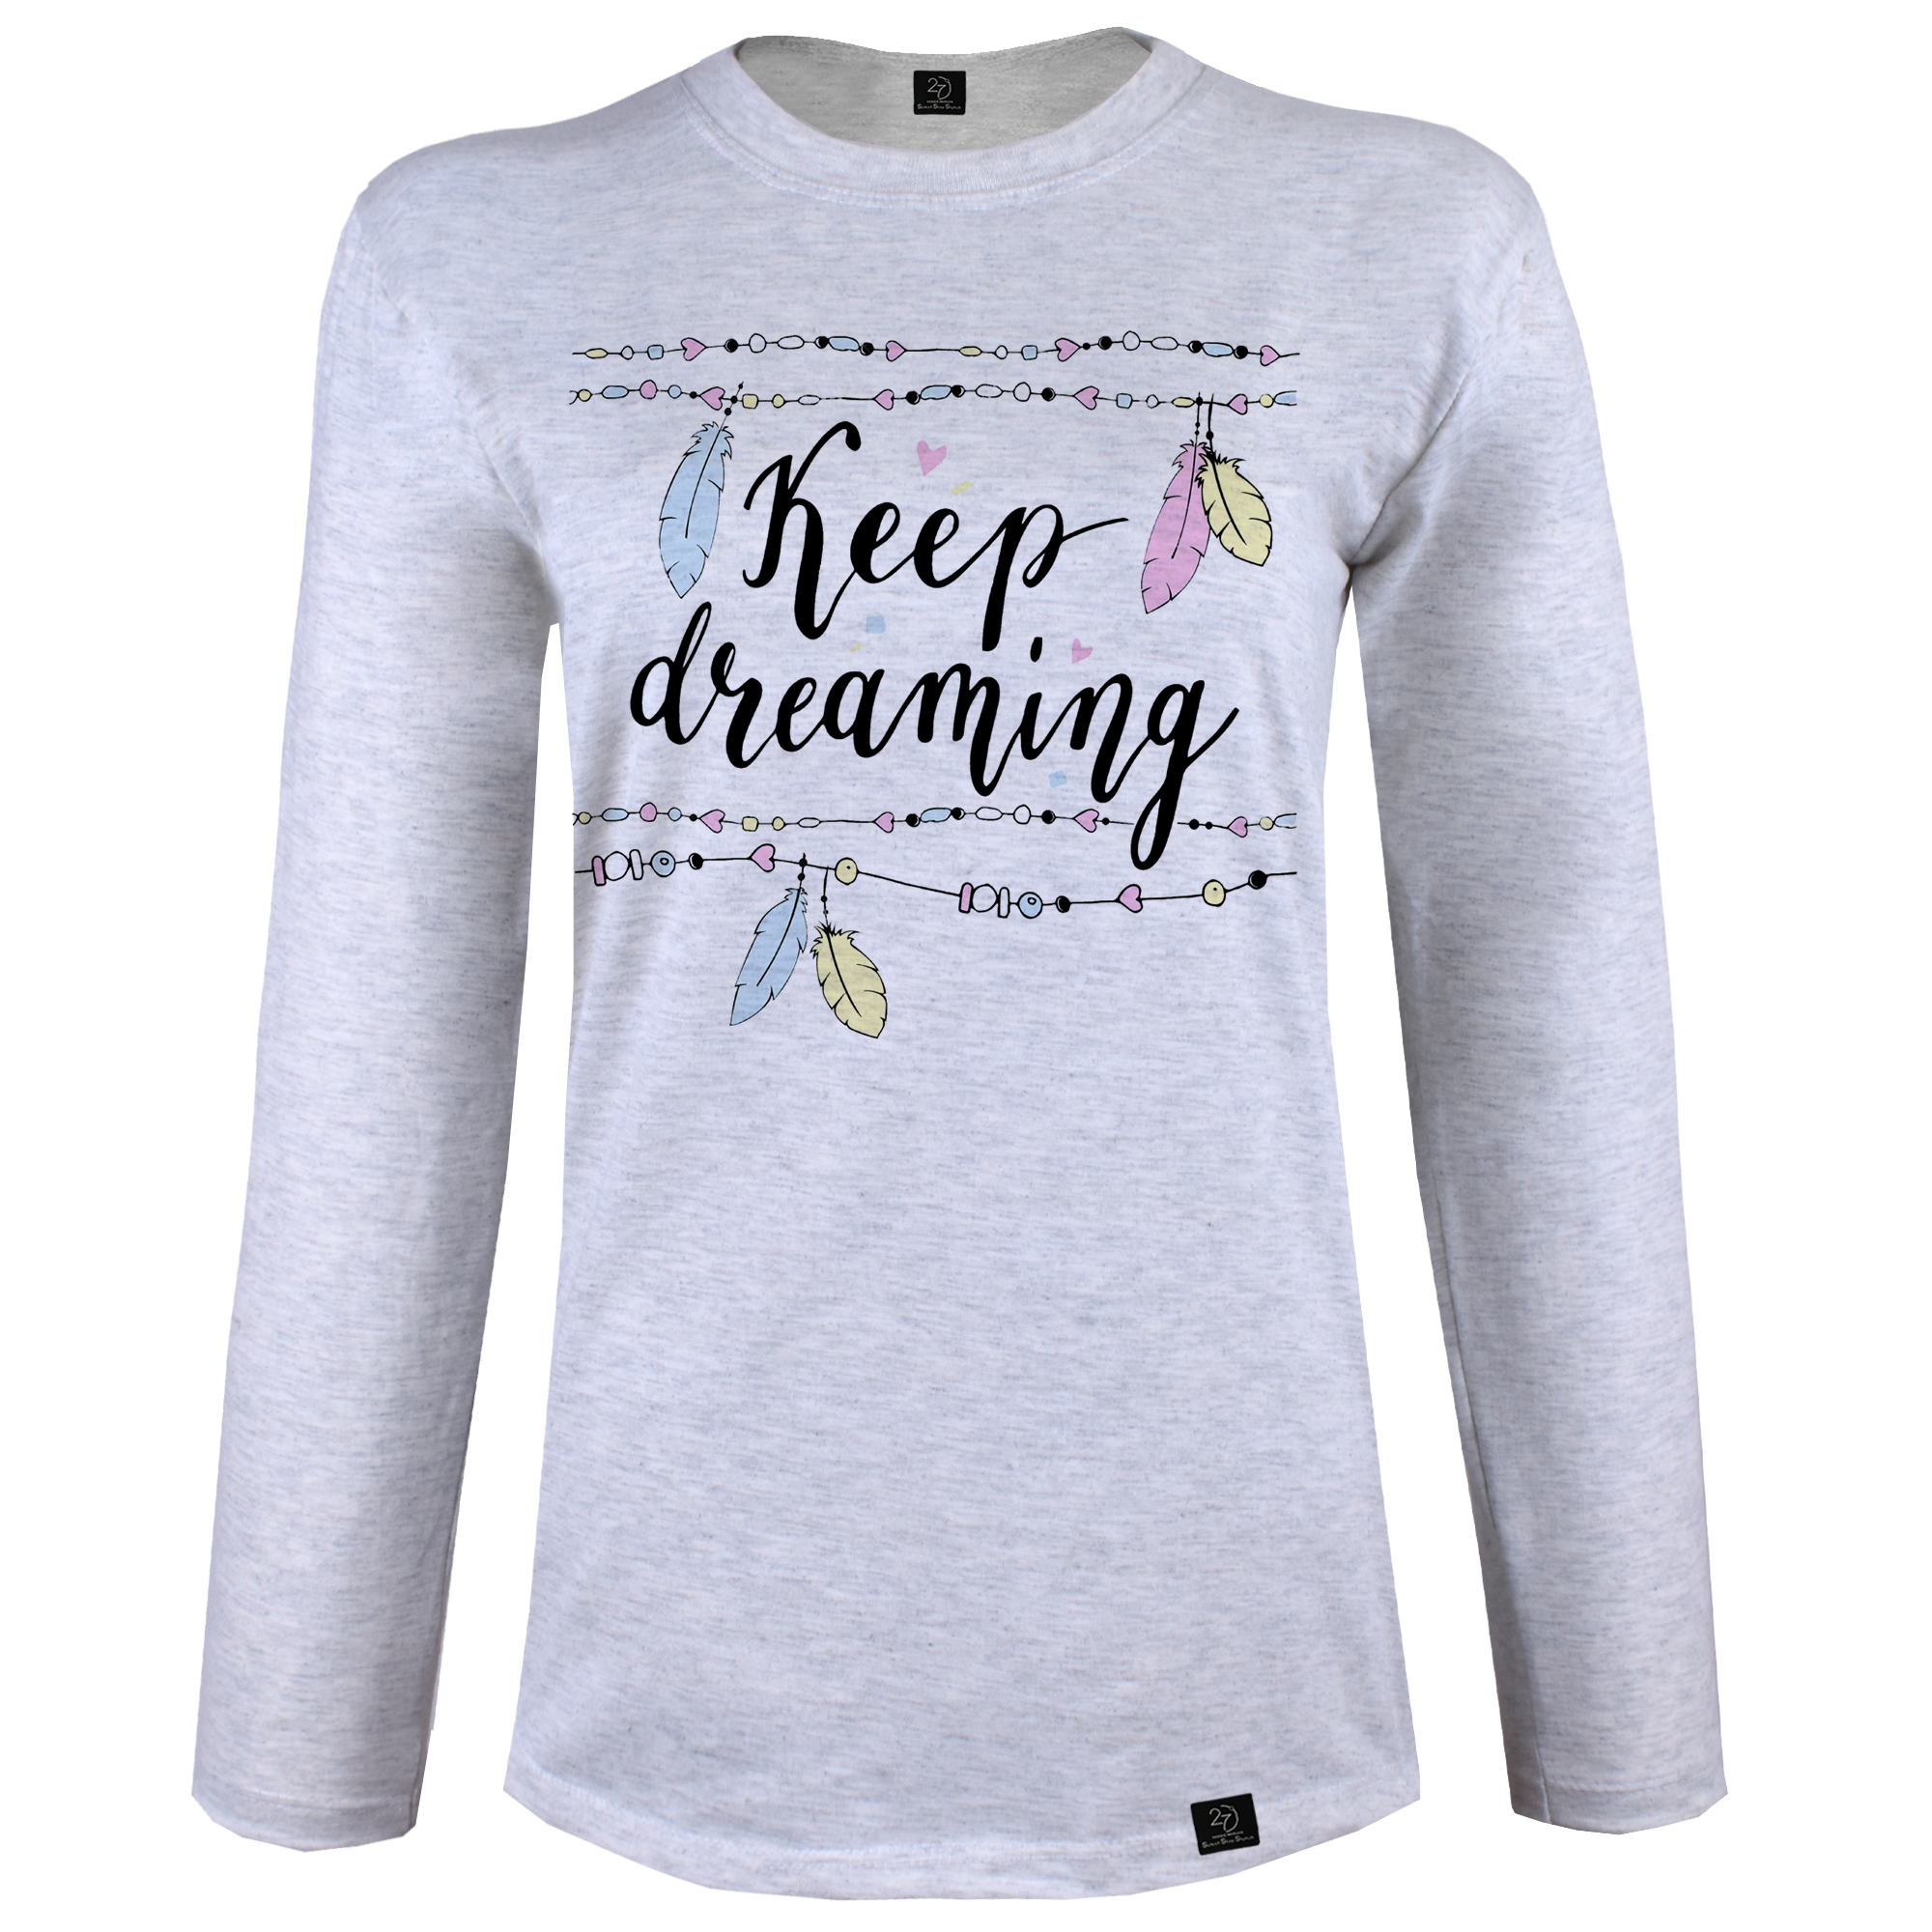 تی شرت آستین بلند زنانه 27 مدل Keep Dreaming کد B115